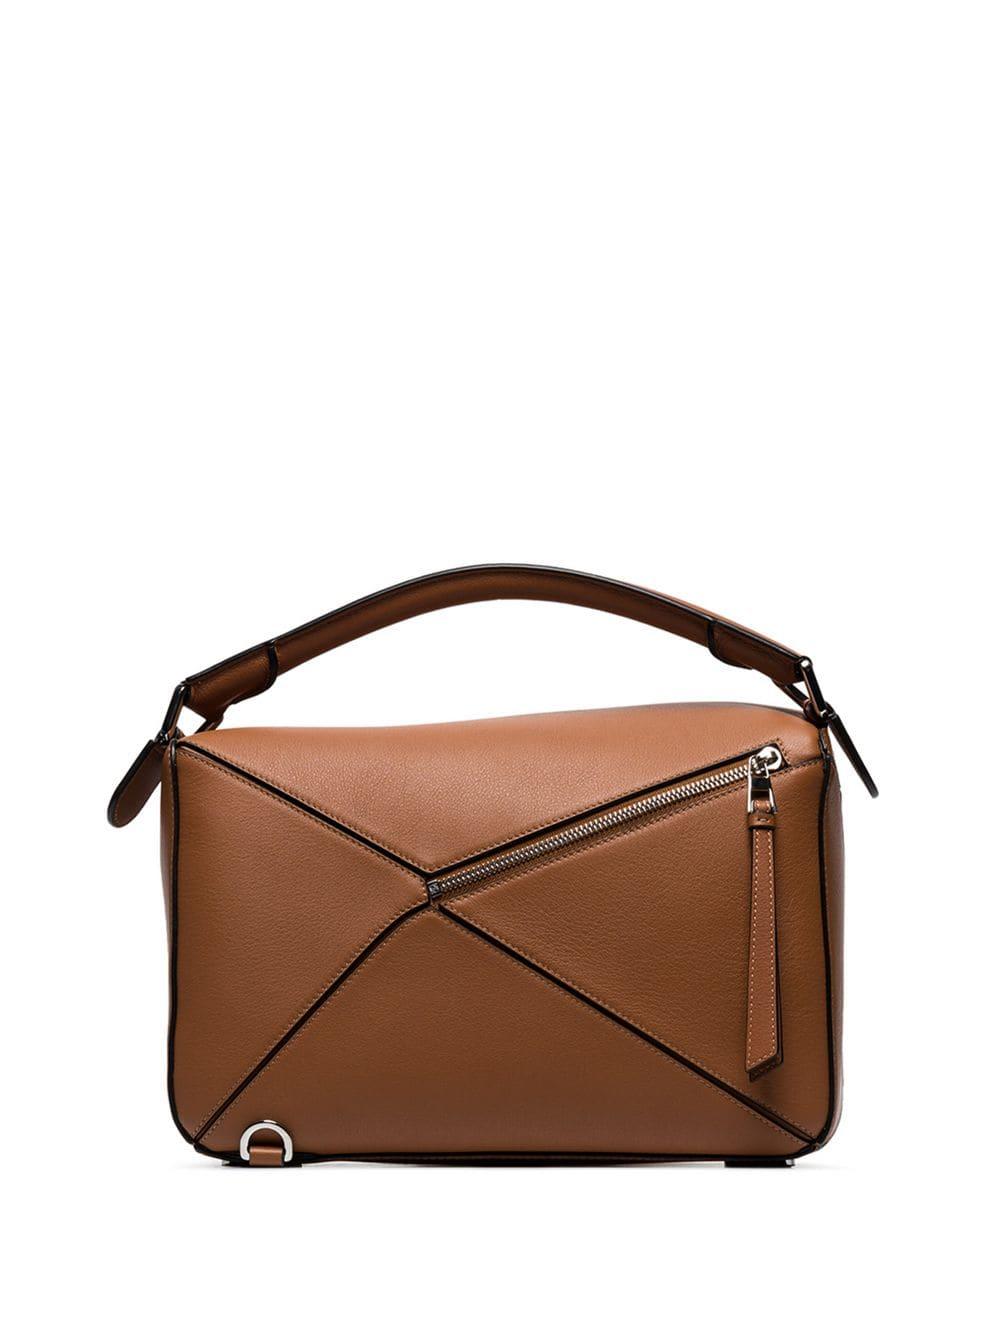 Loewe Brown Puzzle Medium Leather Shoulder Bag in Brown - Lyst